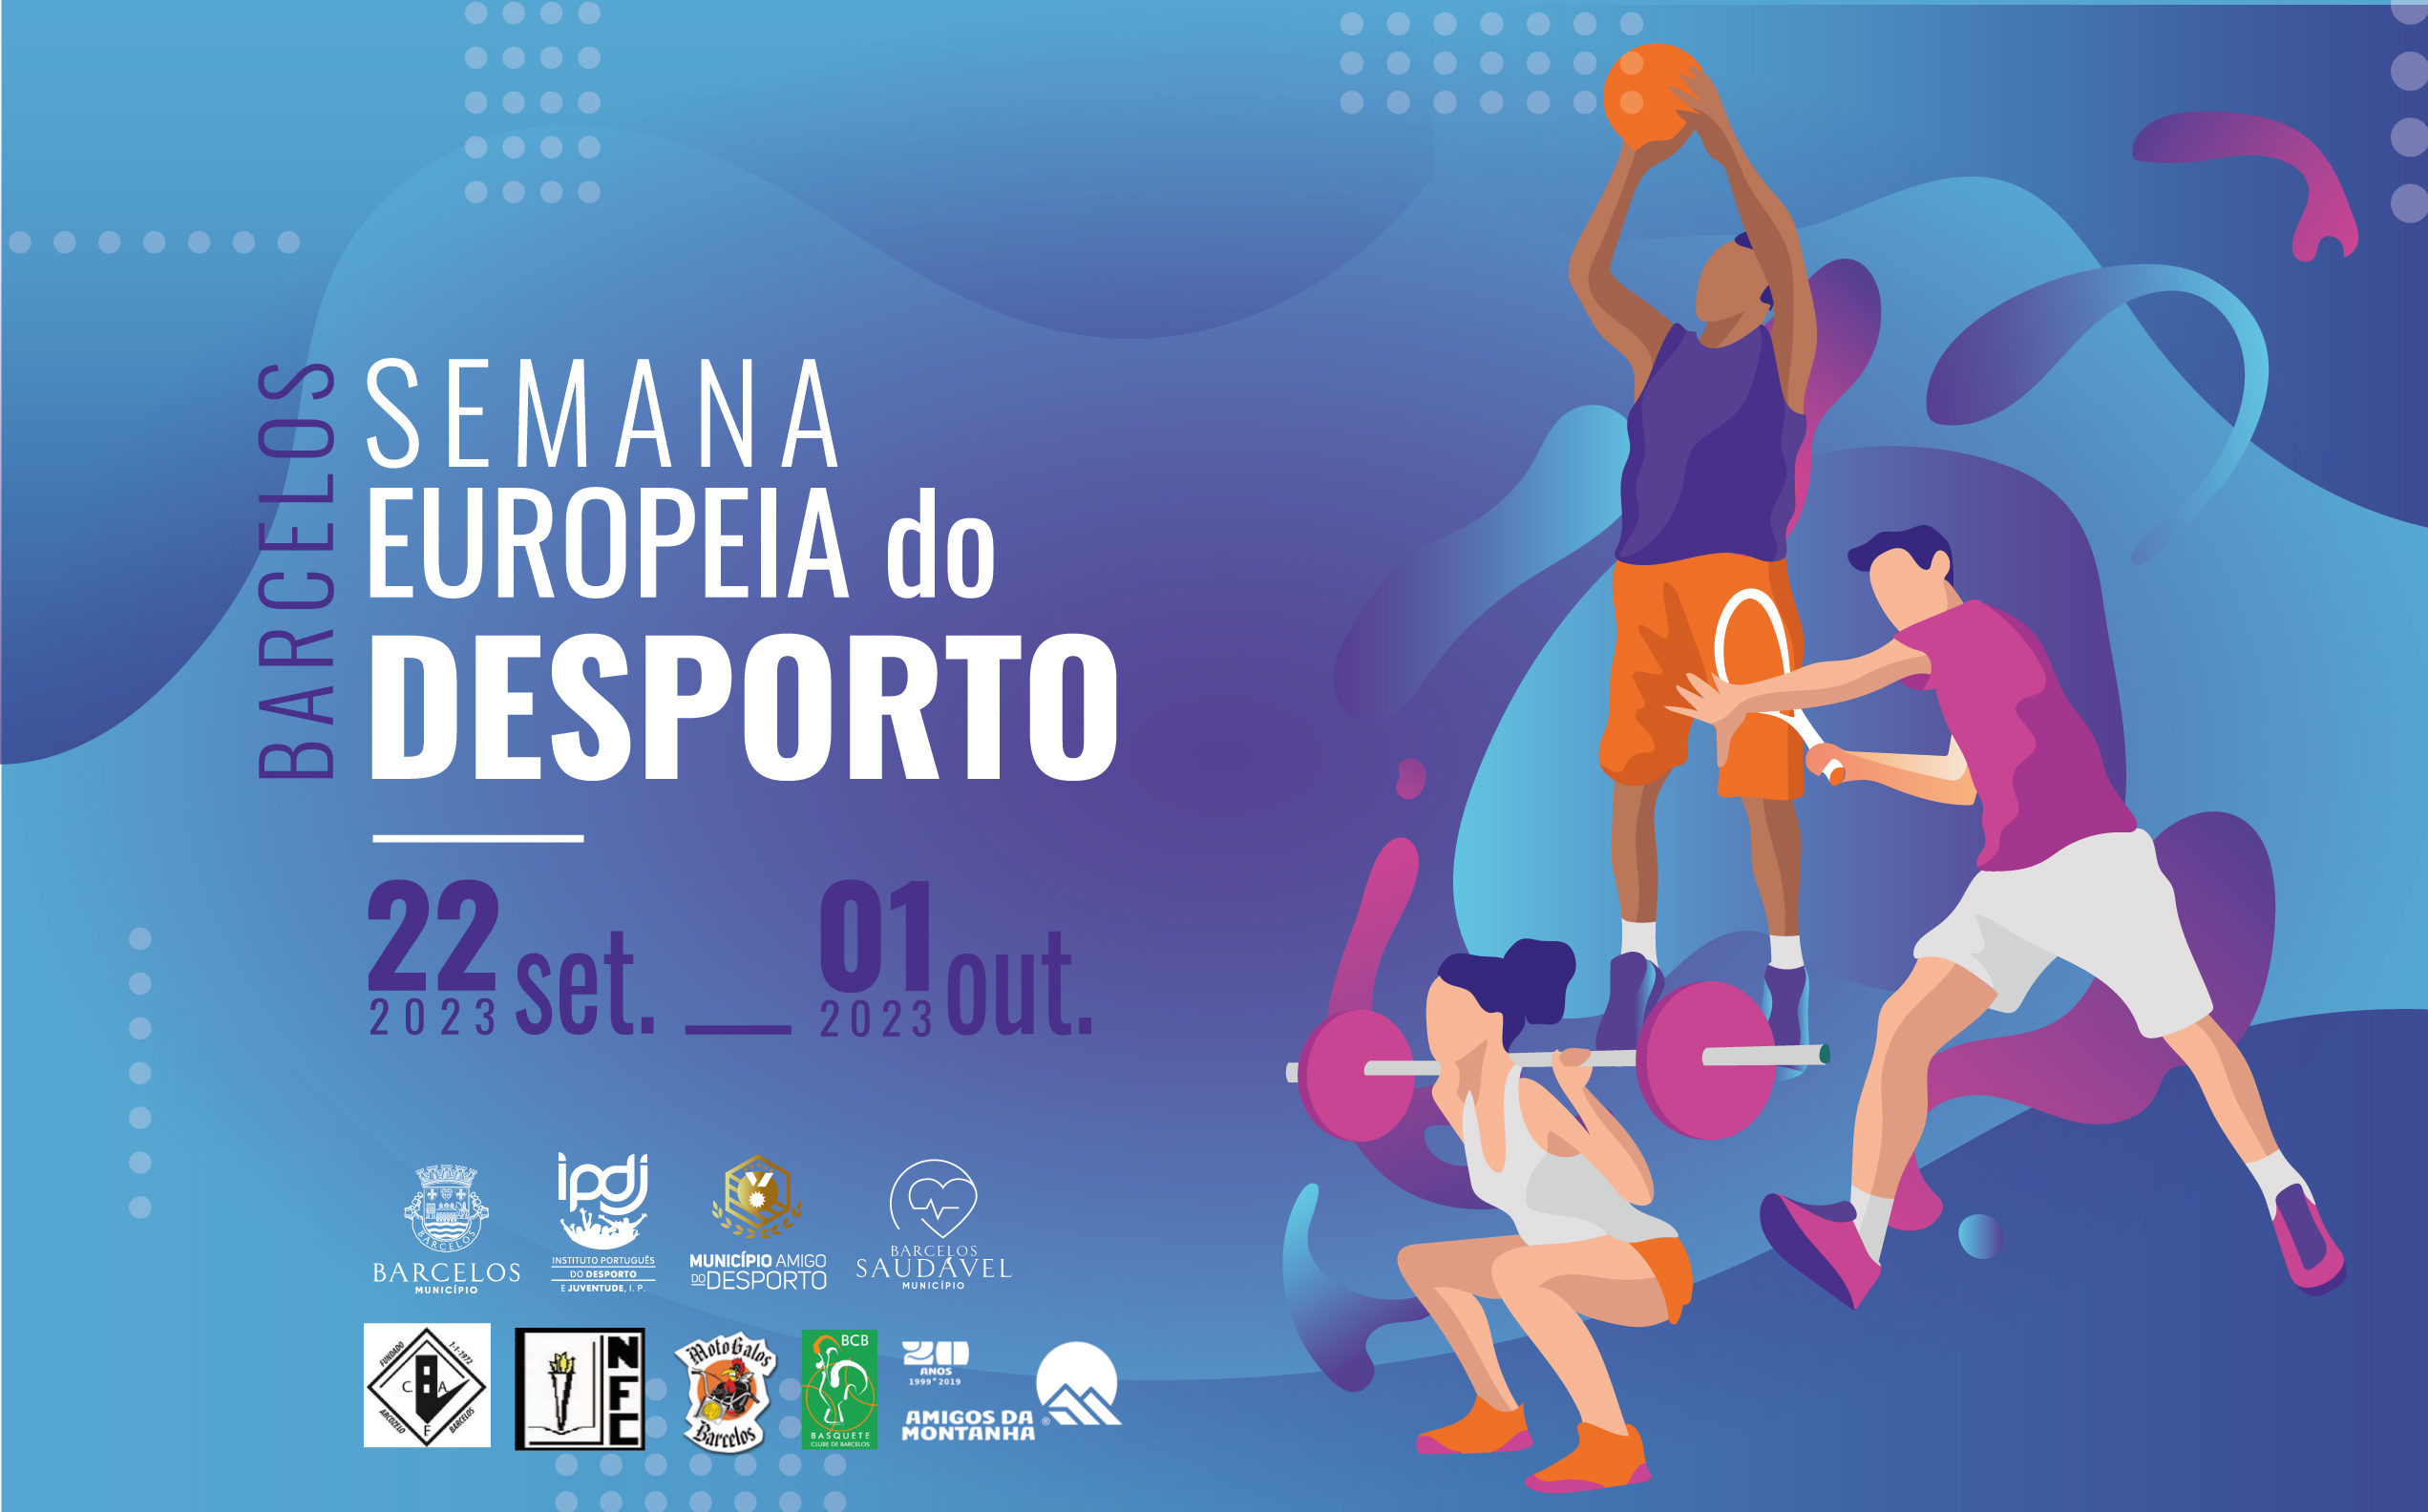 Município de Barcelos associa-se à Semana Europeia do Desporto